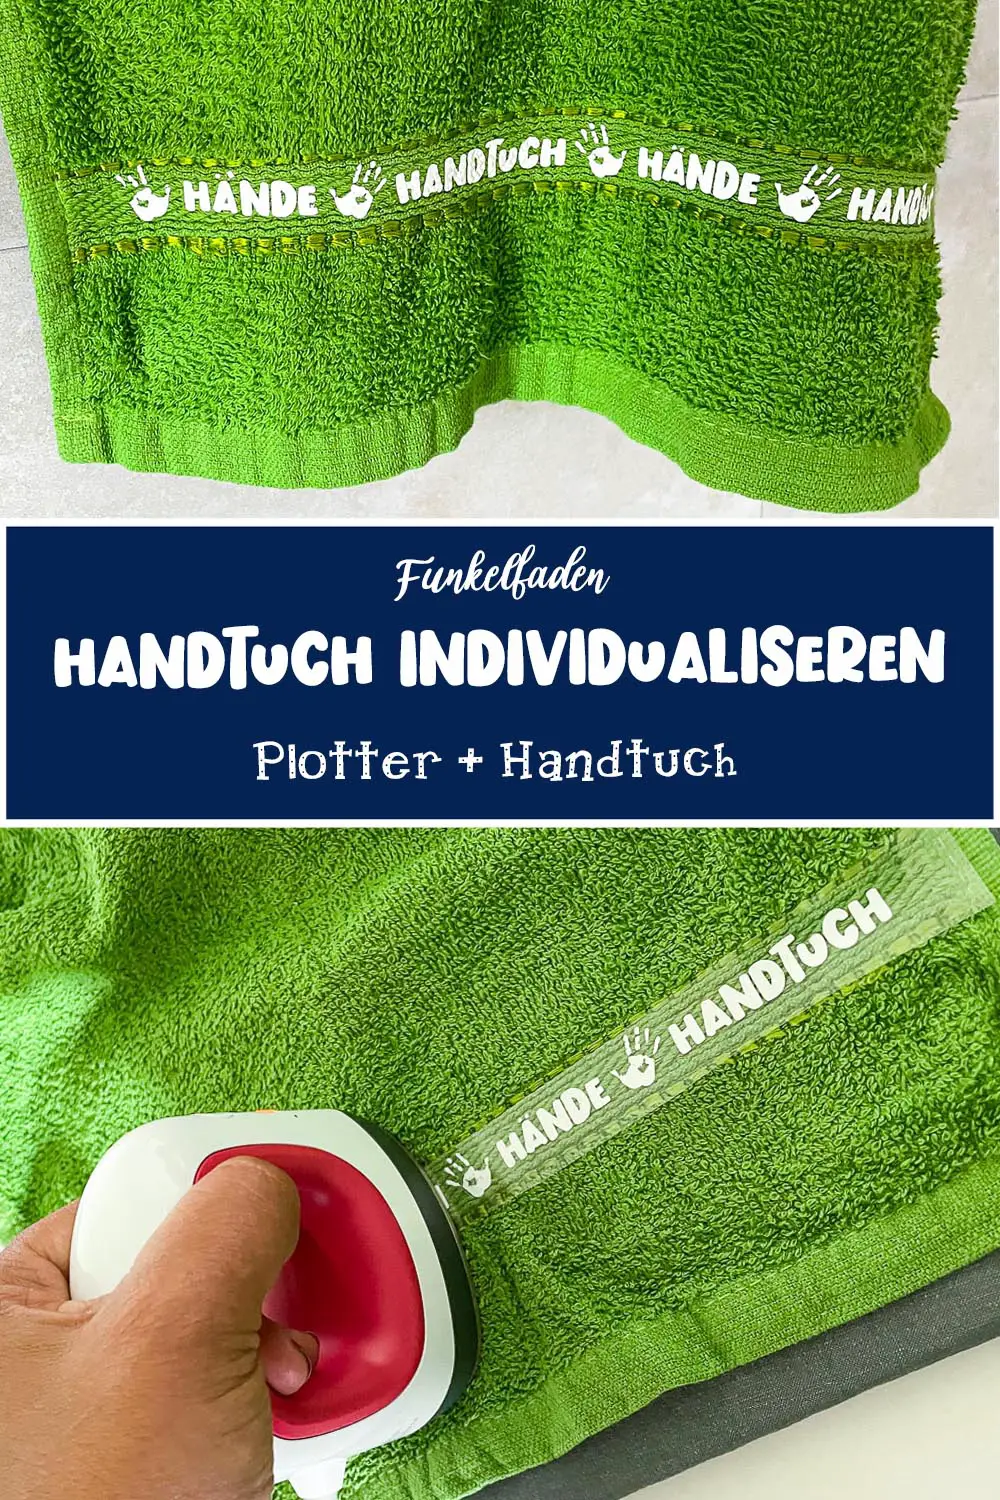 Handtuch plotter - Handtuch individualisieren mit dem Plotter